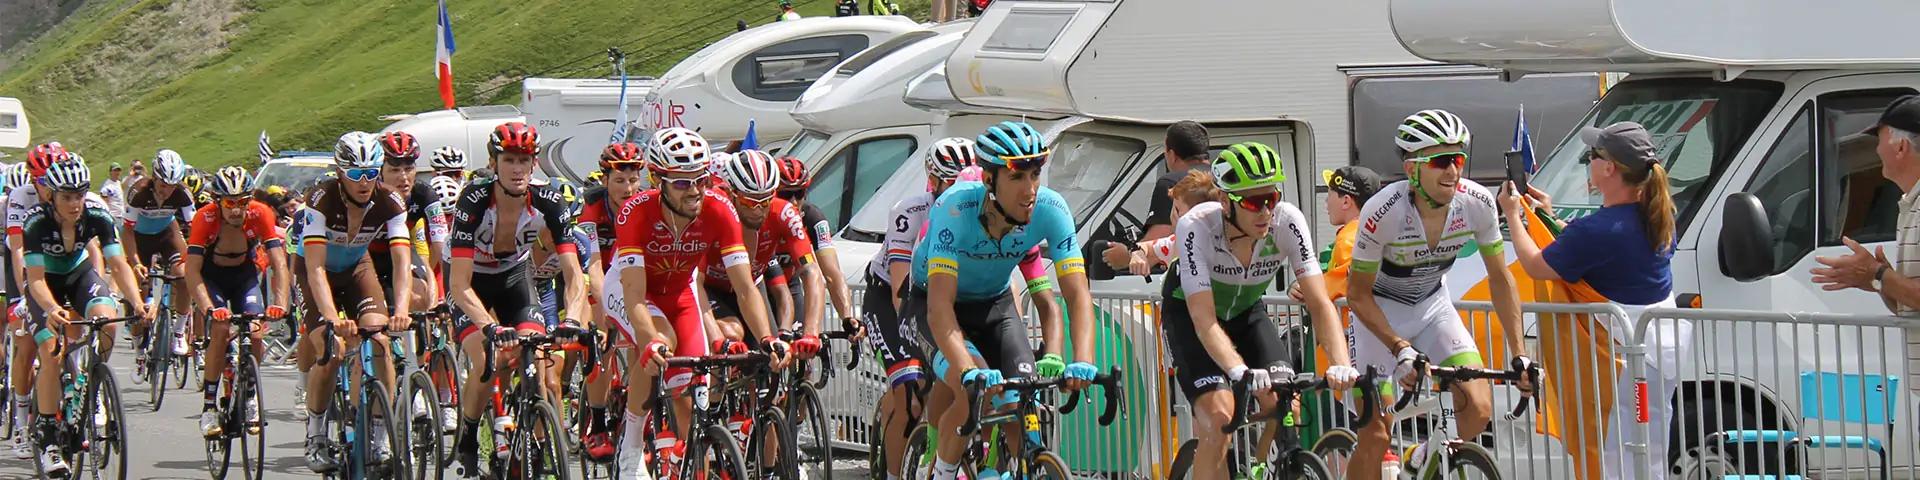 image illustration Tour de France 2019 au Tourmalet-Barèges et à Bagnères-de-Bigorre